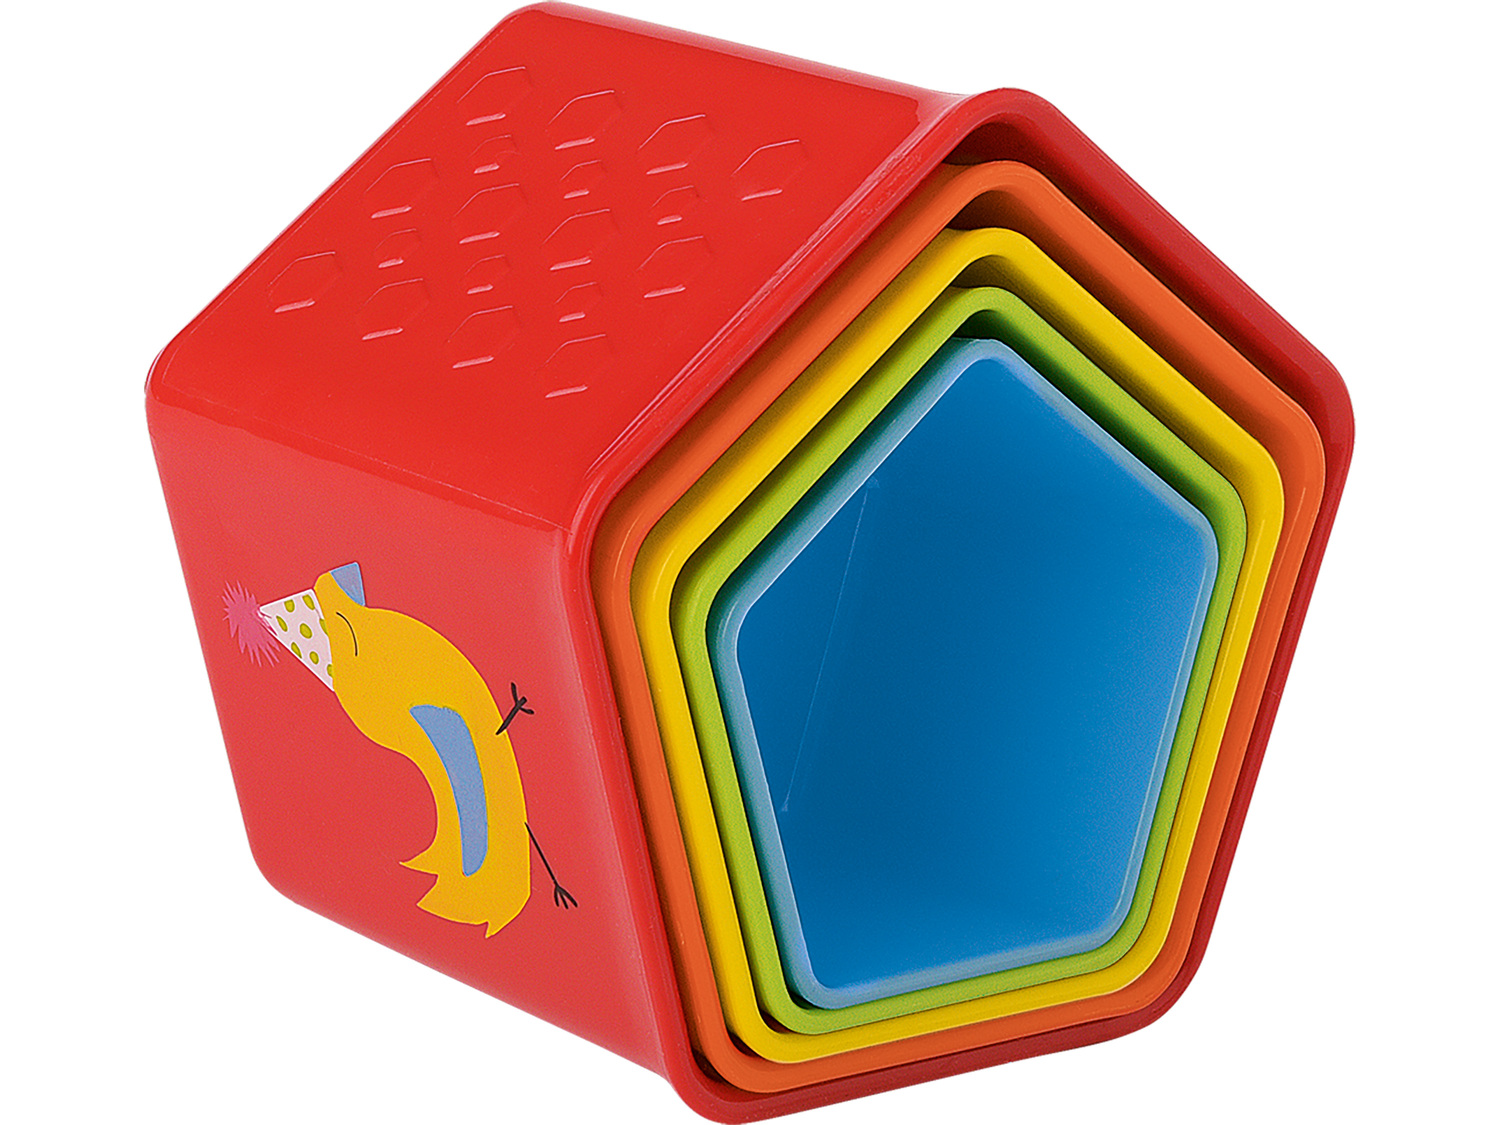 Zabawka do układania Playtive Junior, cena 22,99 PLN 
- wspiera koordynację wzrokowo-ruchową
Opis

- ...